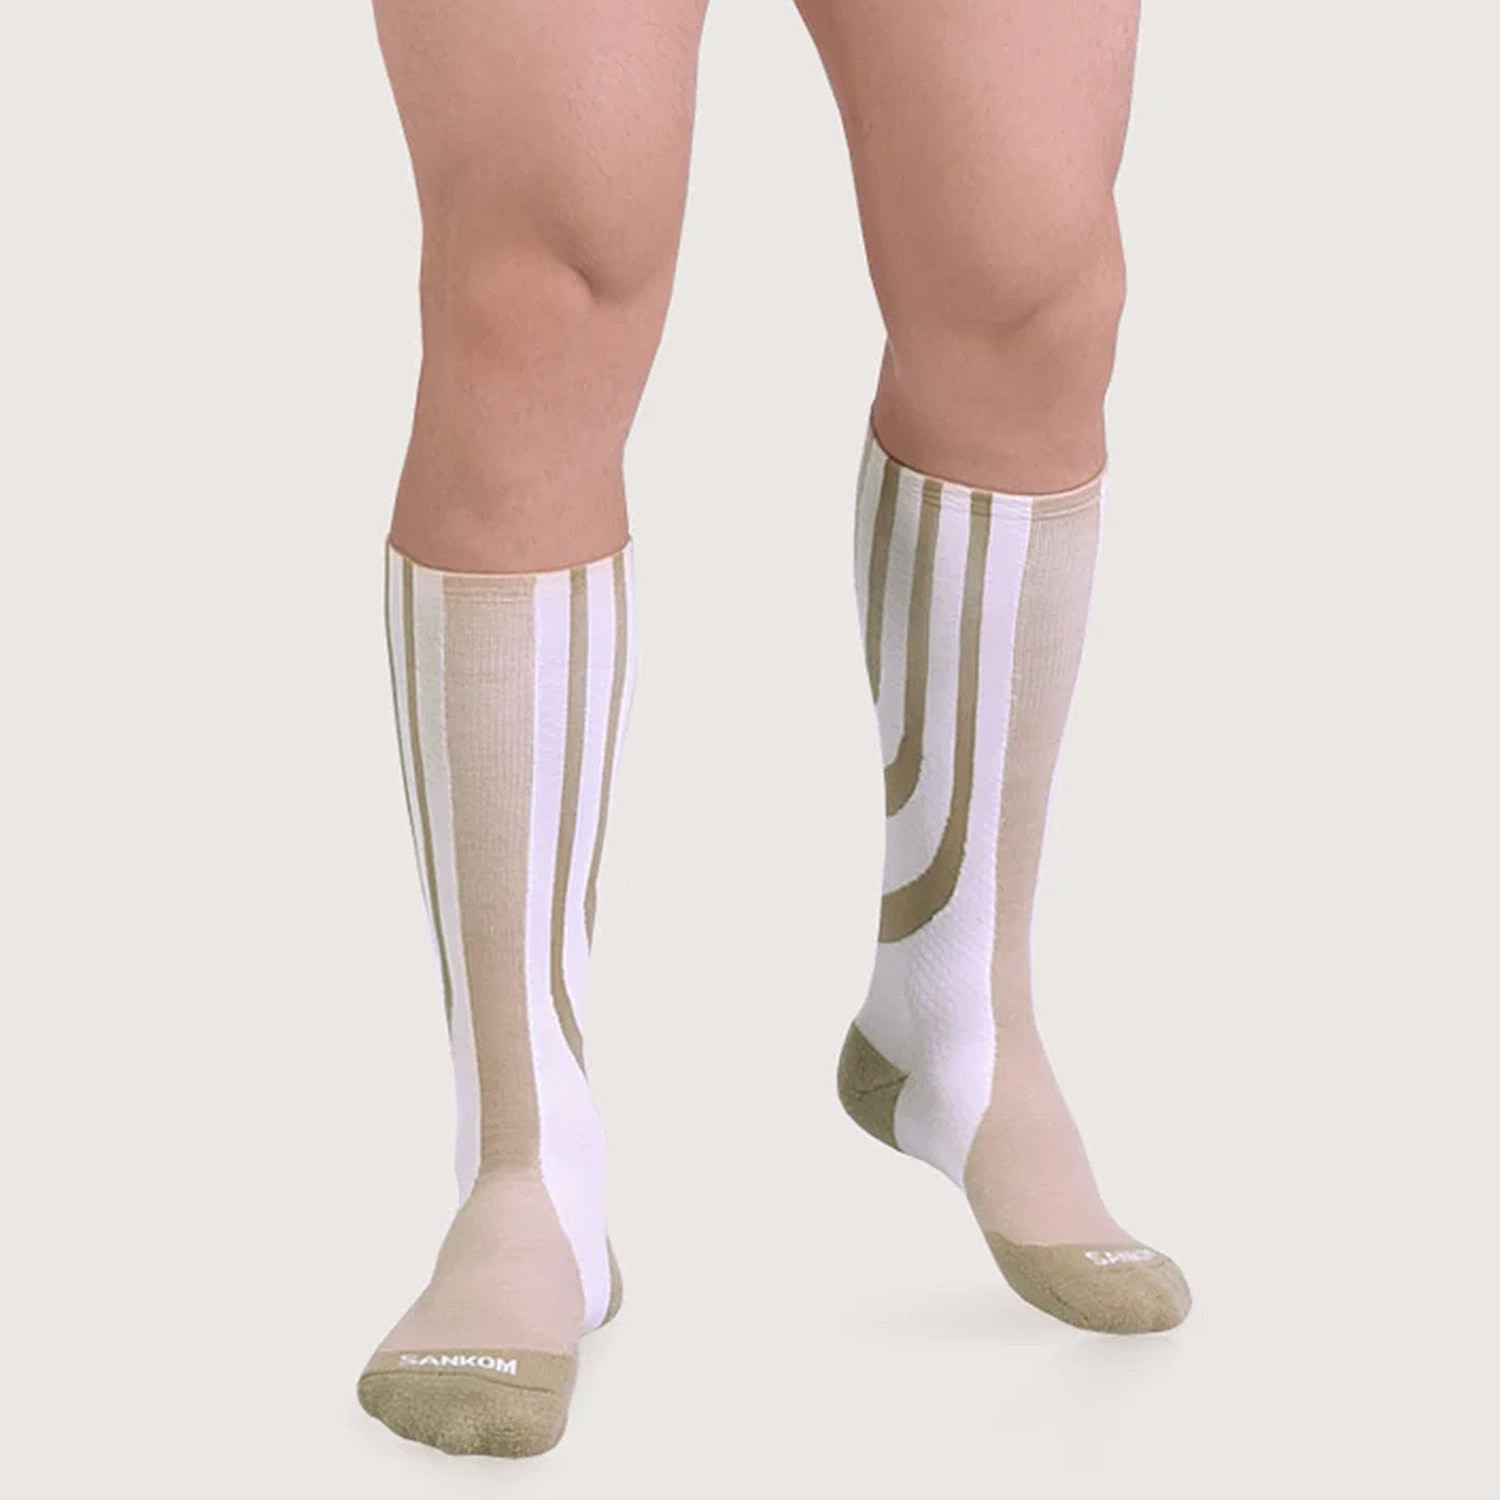 SANKOM Patent New Light Socks (Size S) - Beige